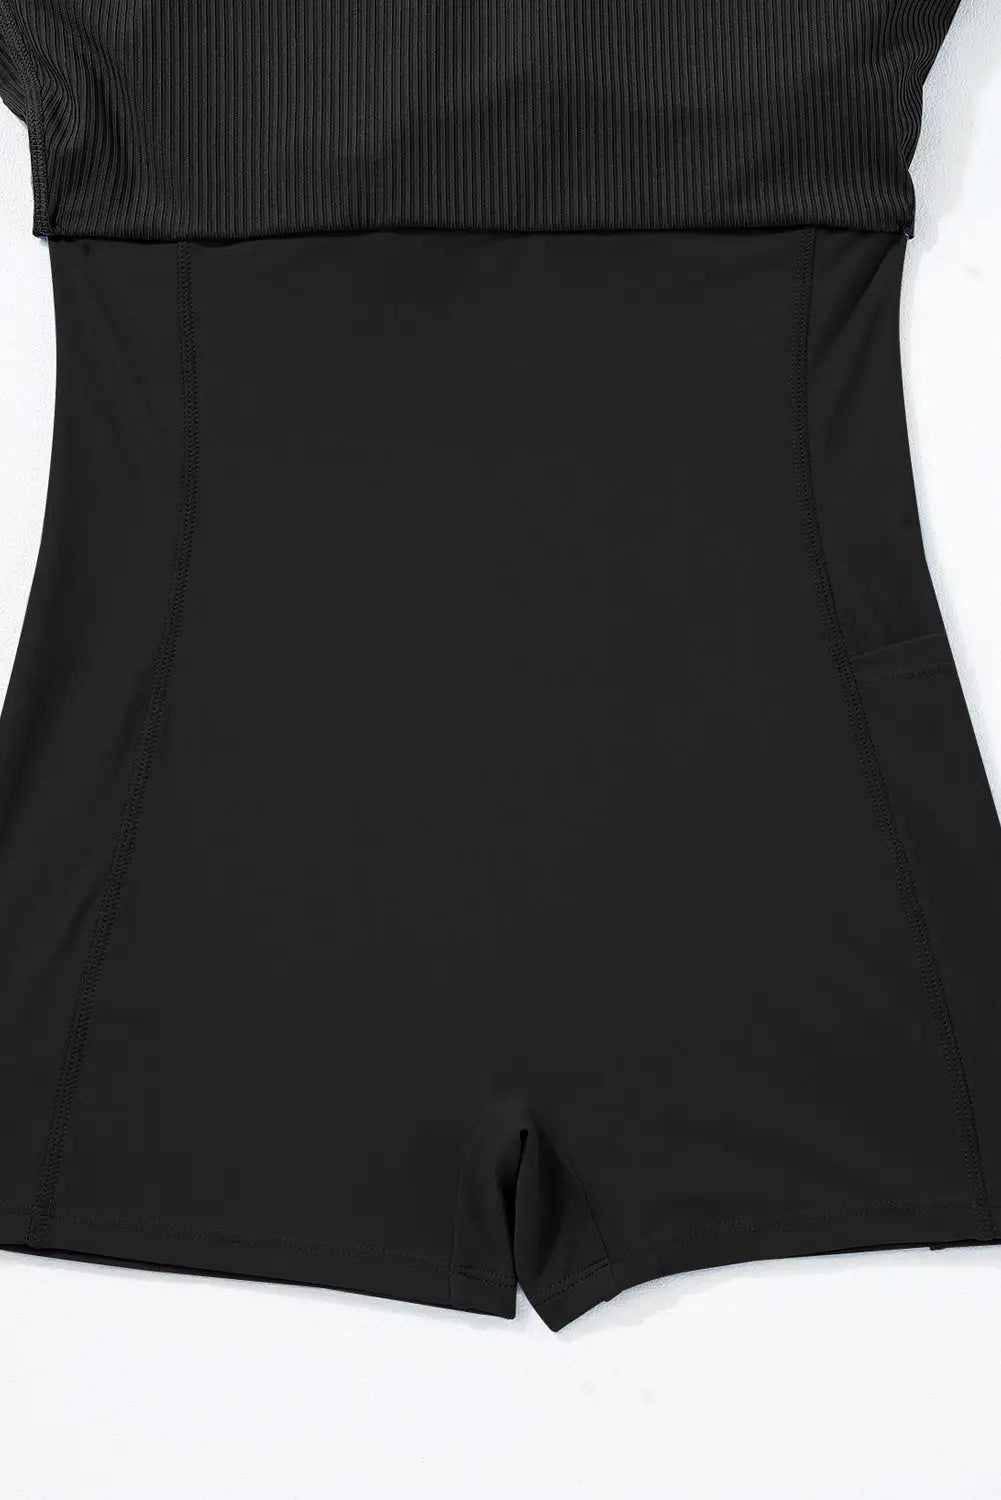 Black sporty one piece swim dress - dresses